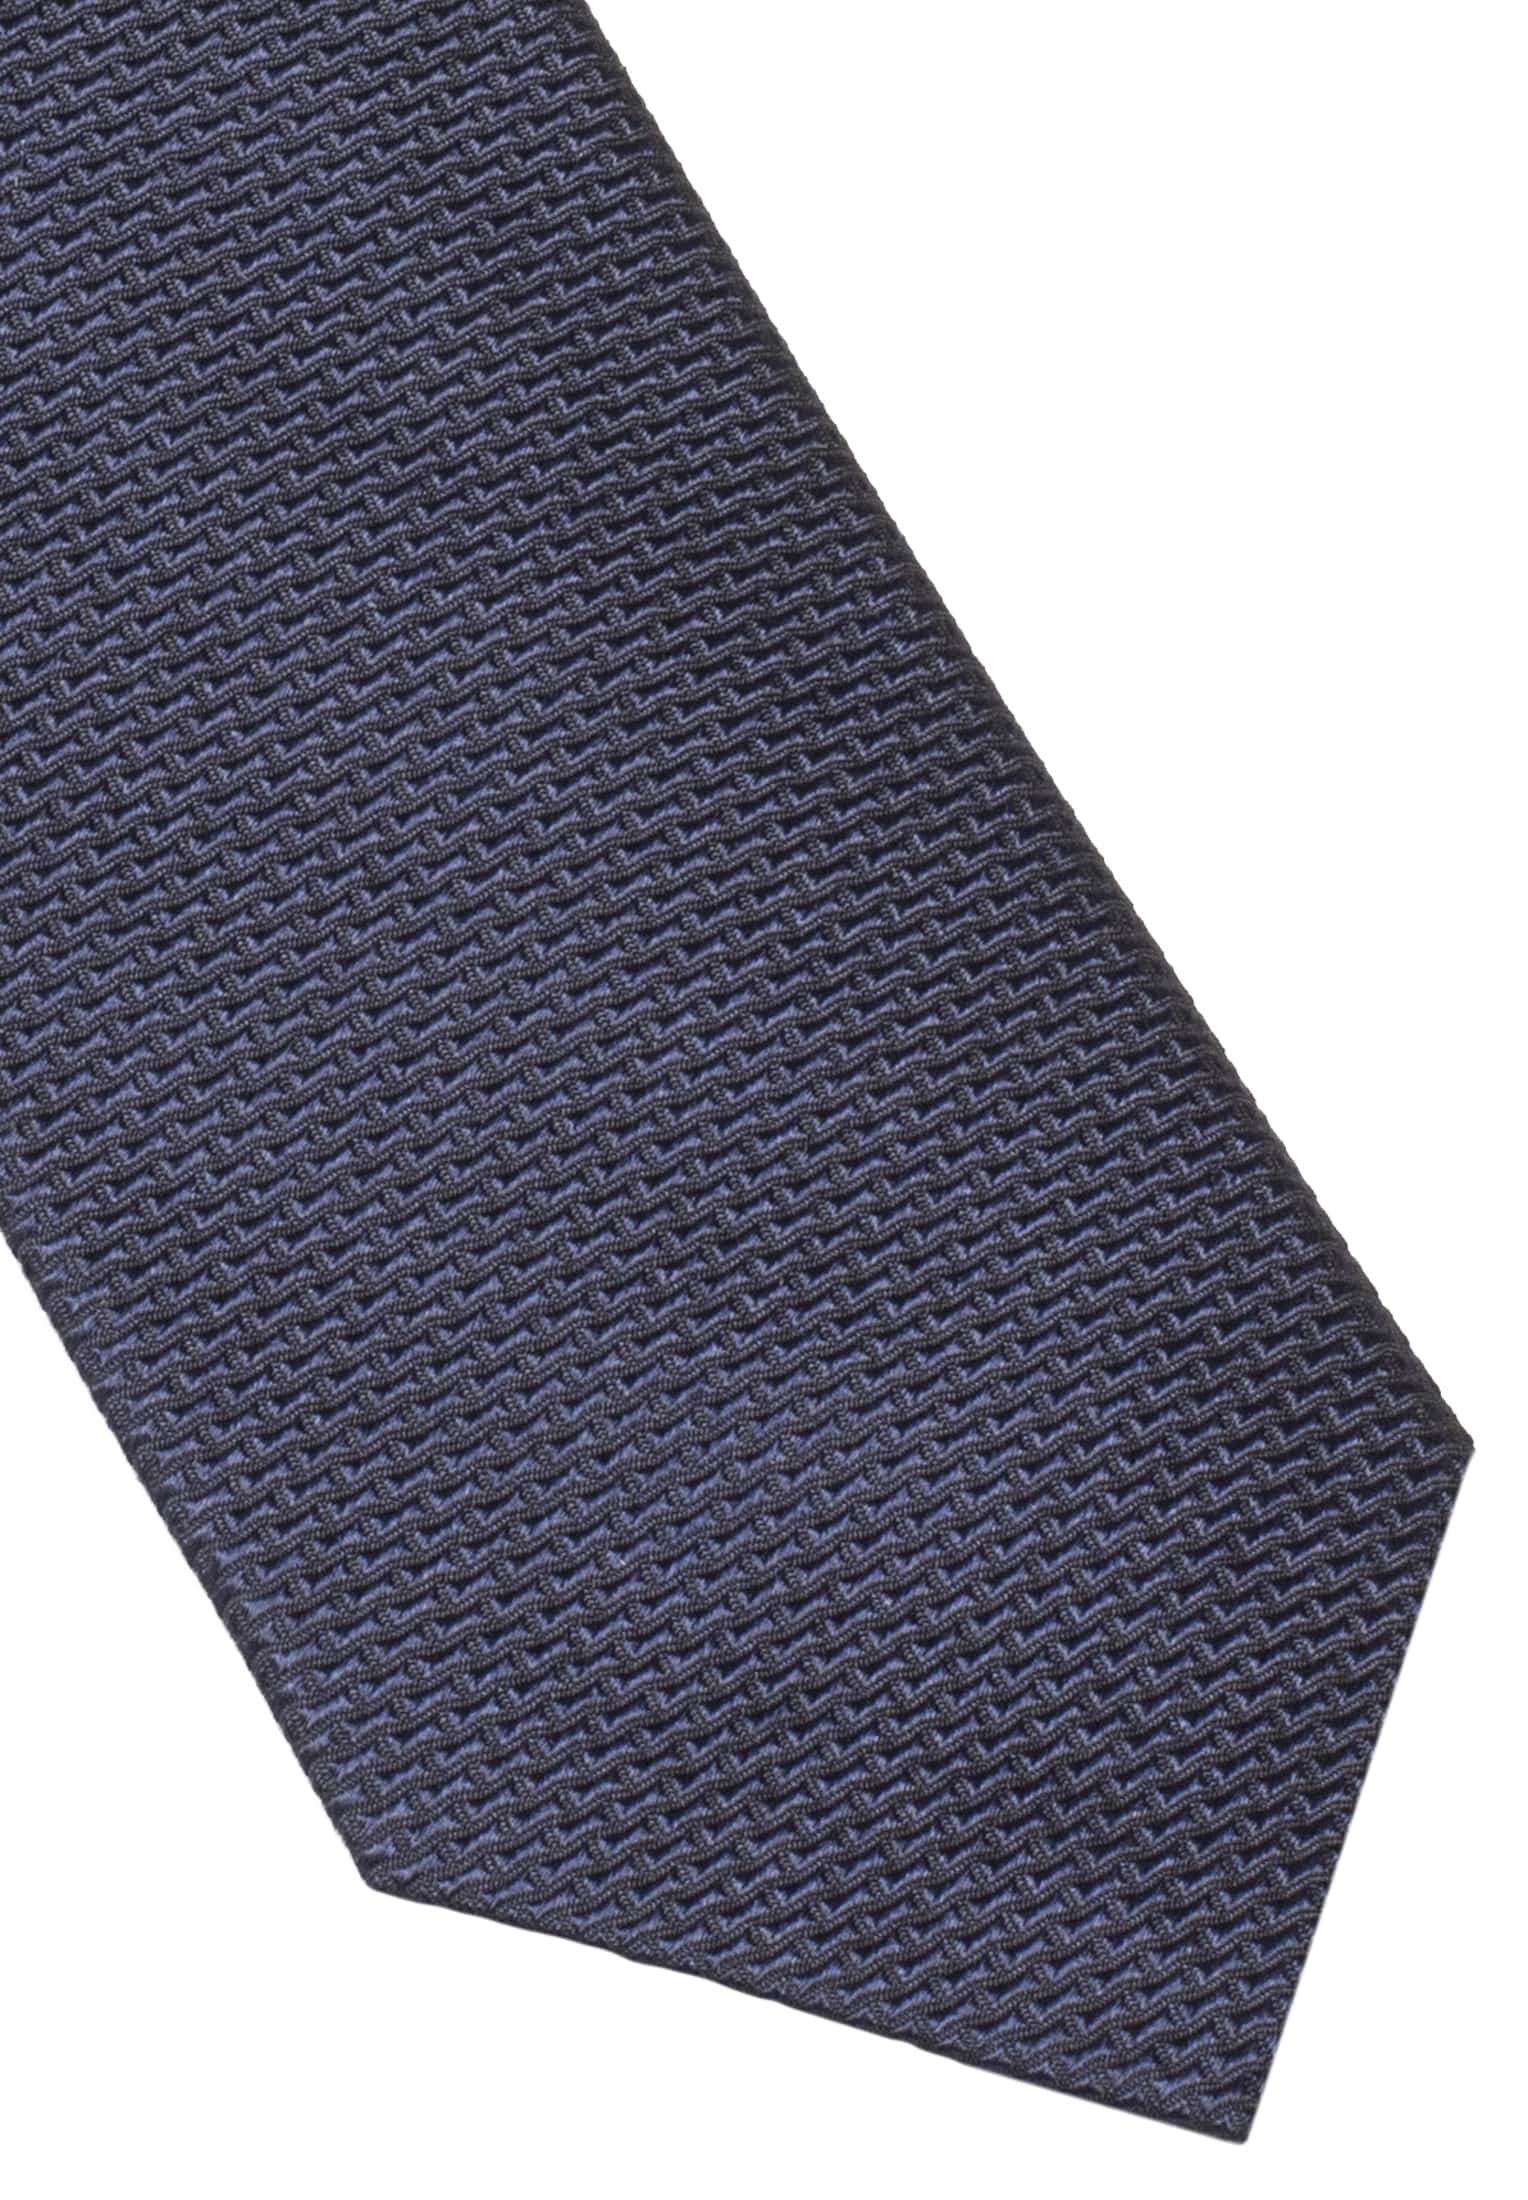 Tie in navy structured